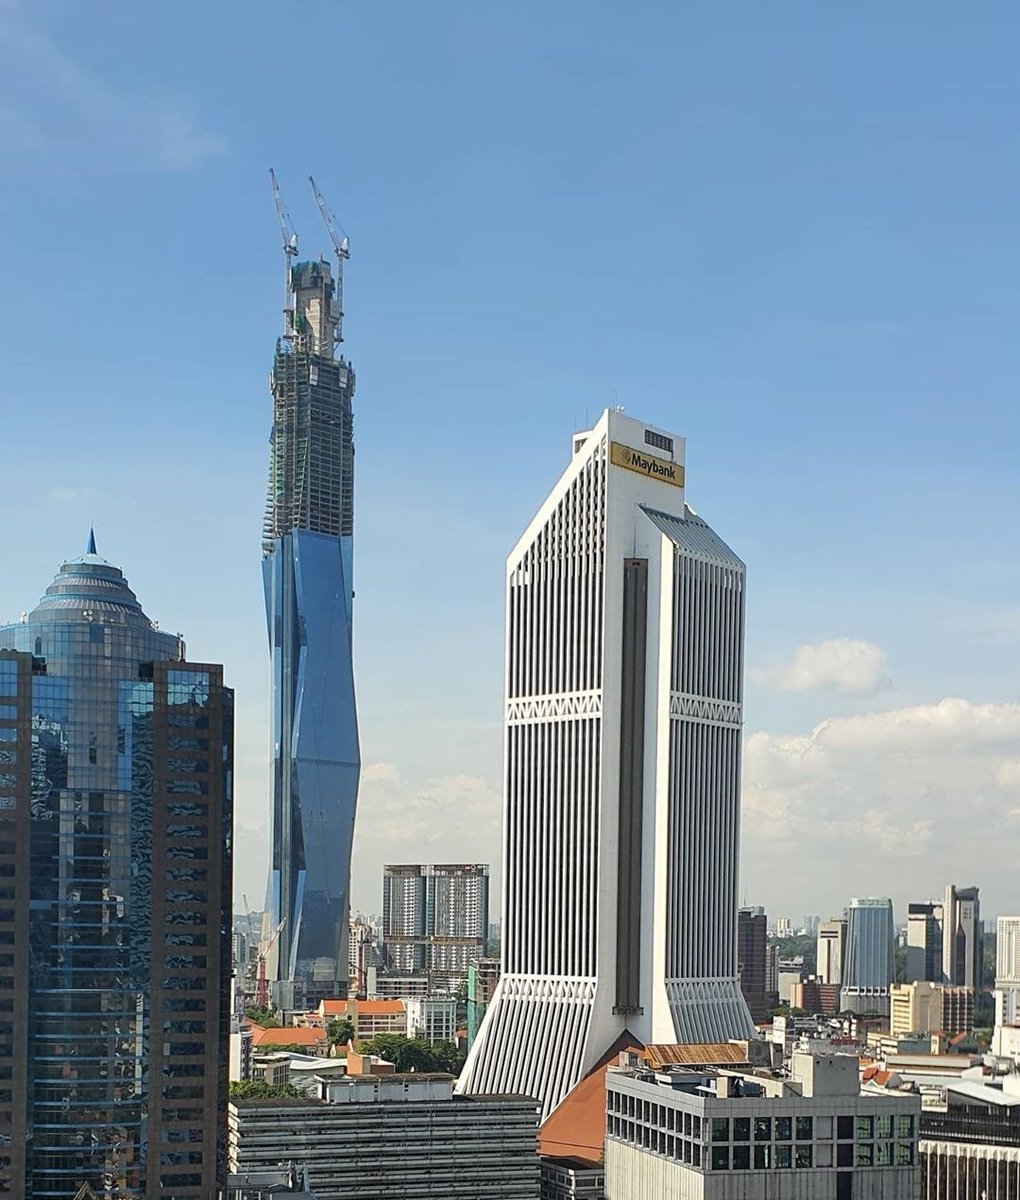 Dekat Kuala Lumpur, mesti korang perasan ada satu bangunan baru dalam pembinaan yang tinggi menjulang! Lagi tinggi dari KLCC, TRX & Menara KL.Tahukah korang, bangunan tu kalau dah siap, ia akan jadi bangunan KEDUA TERTINGGI DI DUNIA selepas Burj Khalifa!Ini adalah bebenang: